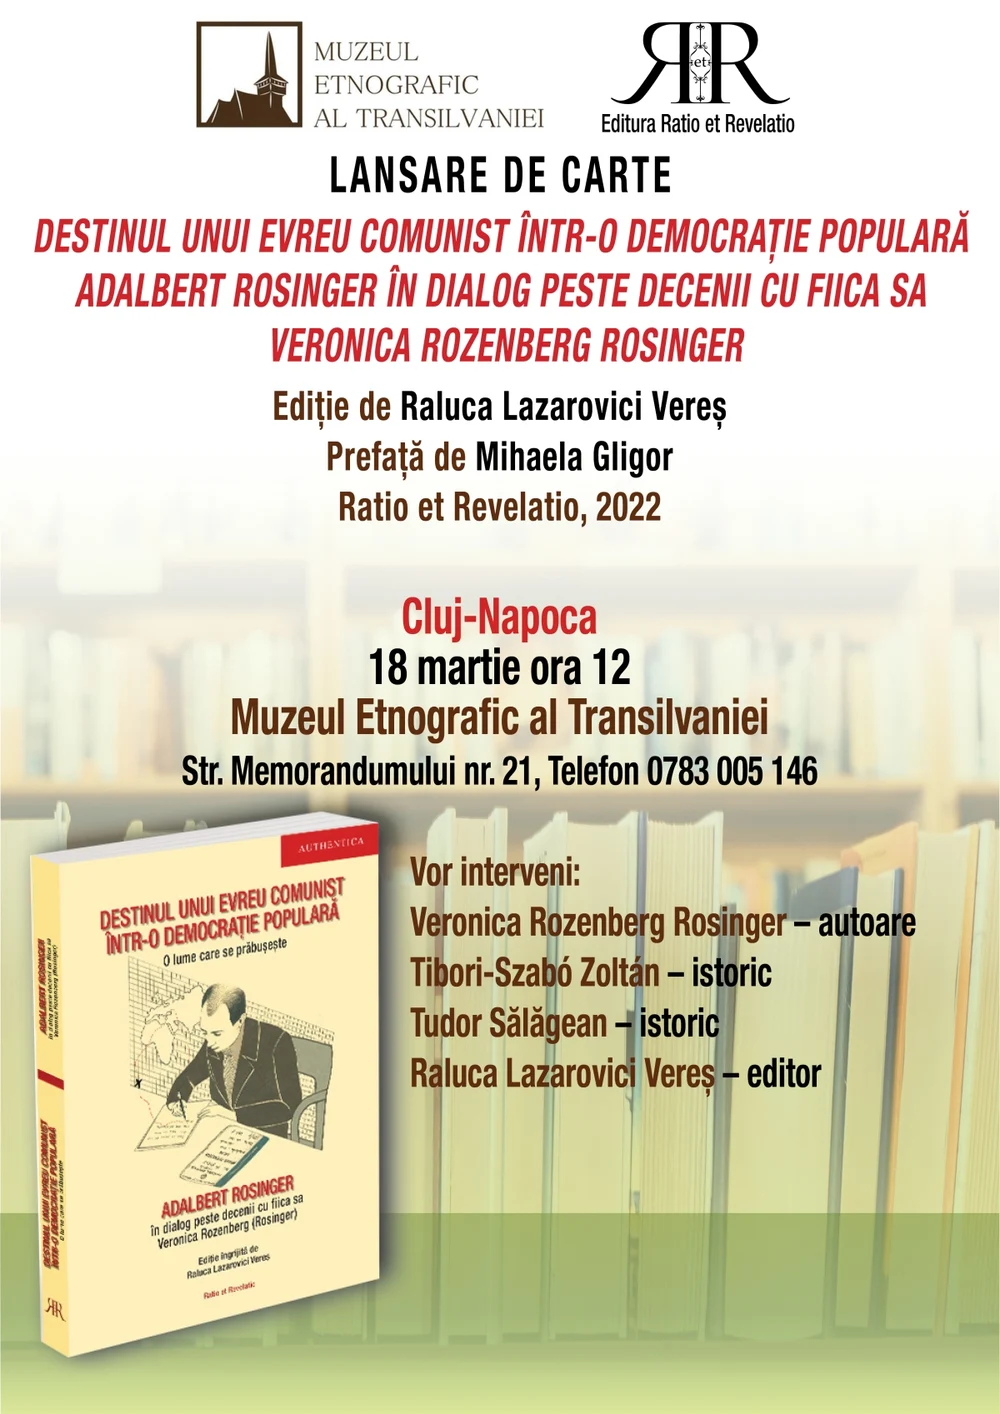 Evento: lansare de carte -o democrație populară.